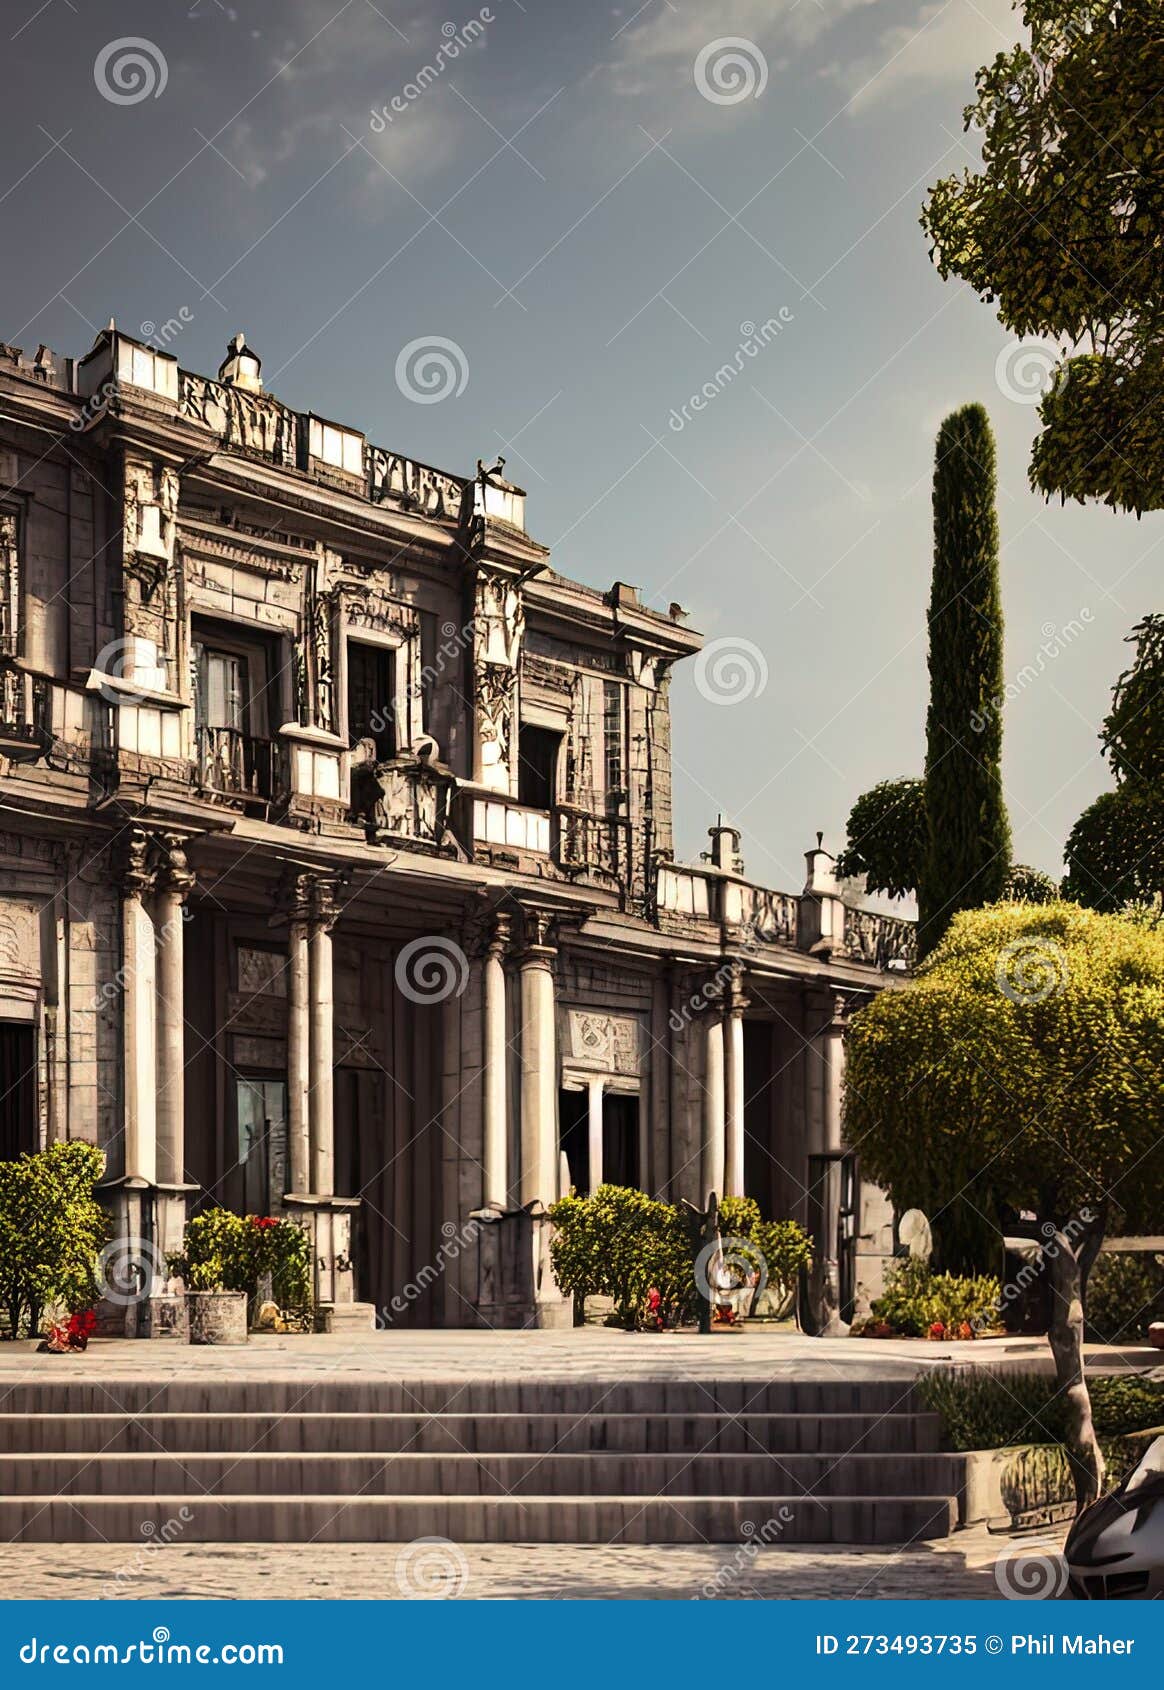 fictional mansion in mexico city, ciudad de mÃ©xico, mexico.